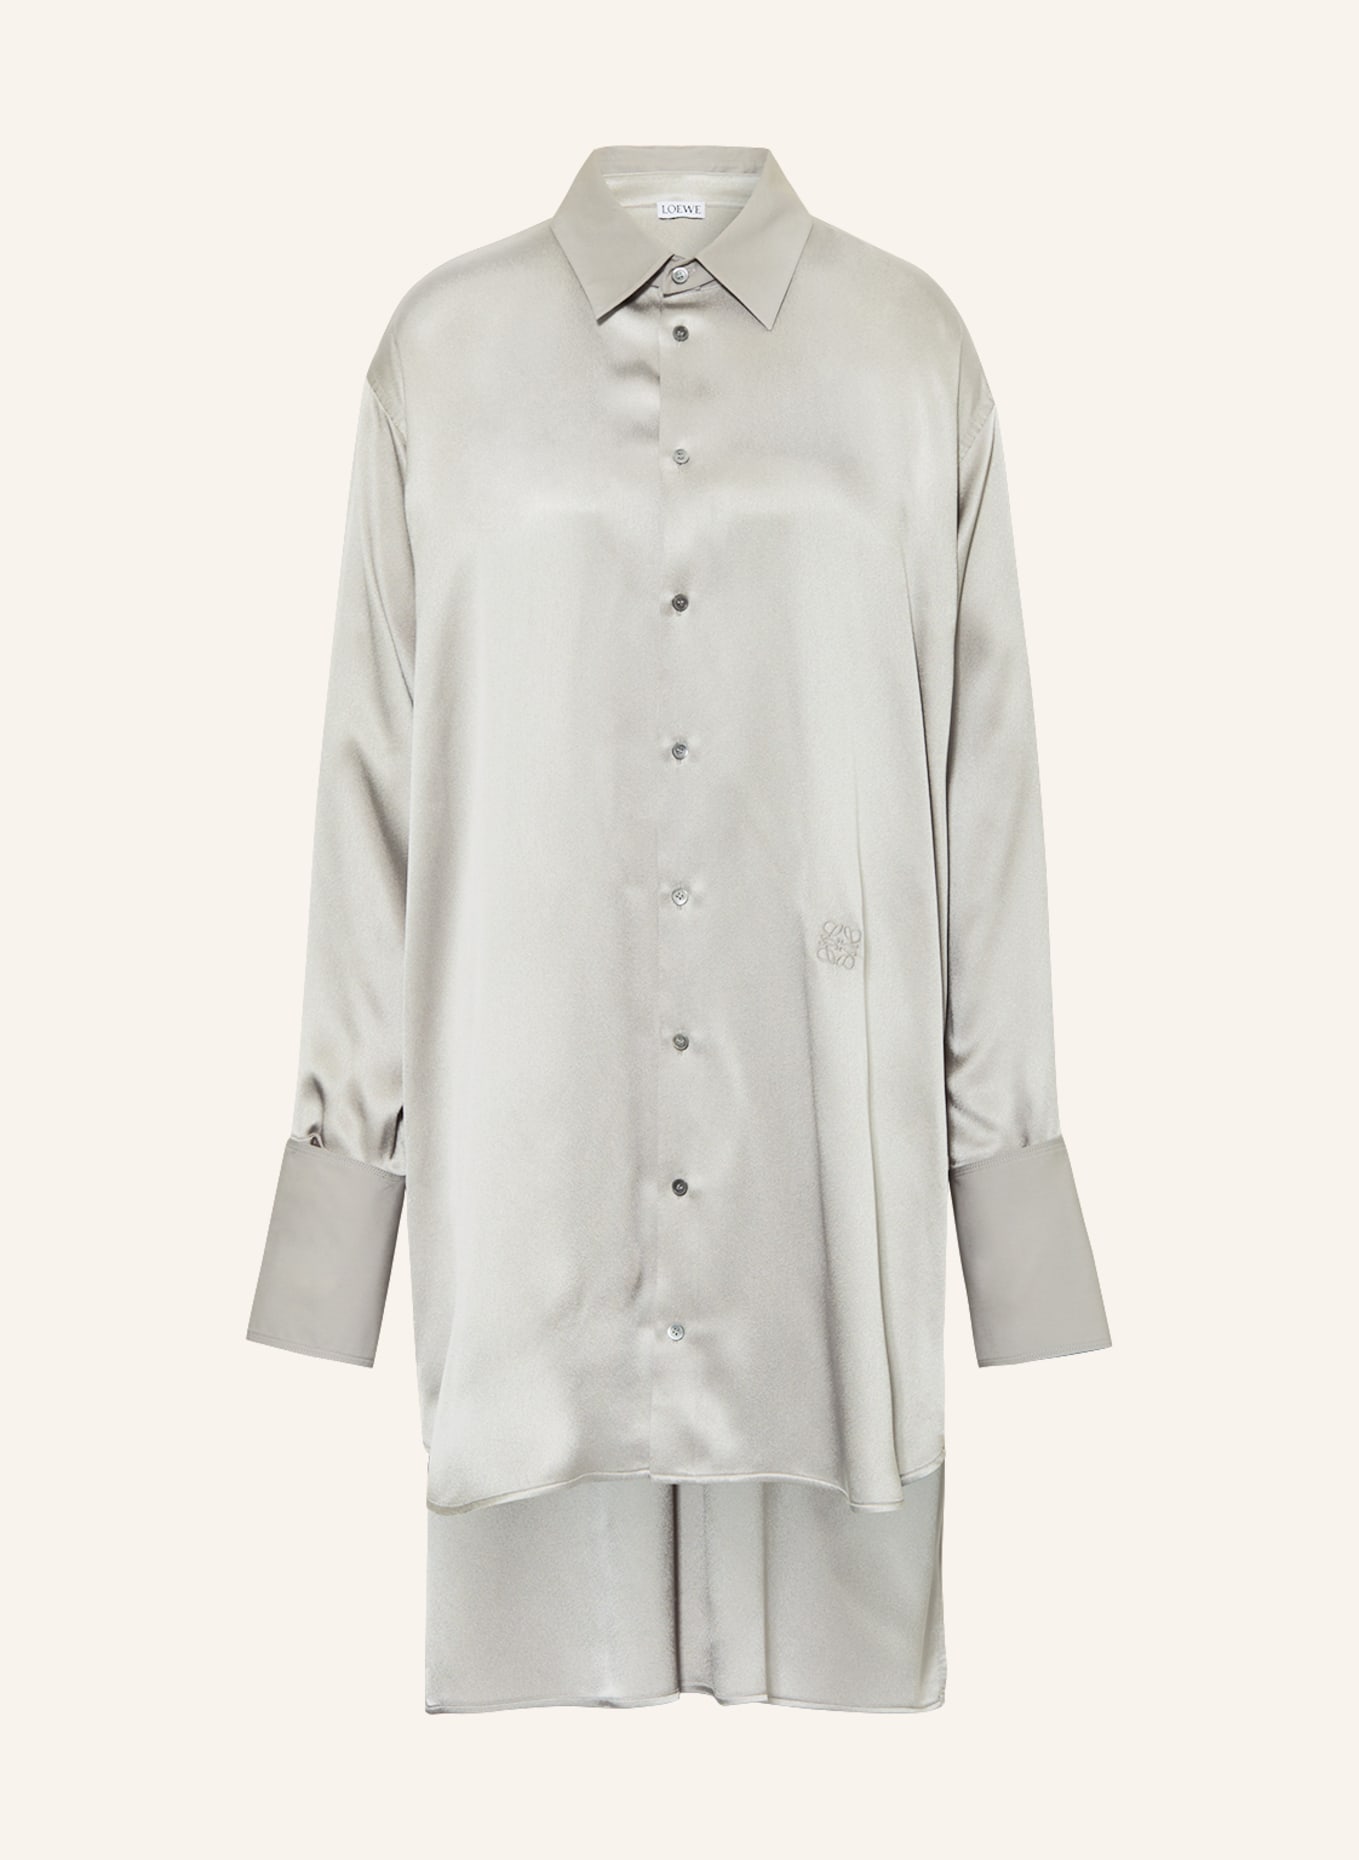 LOEWE Shirt dress in silk, Color: GRAY (Image 1)